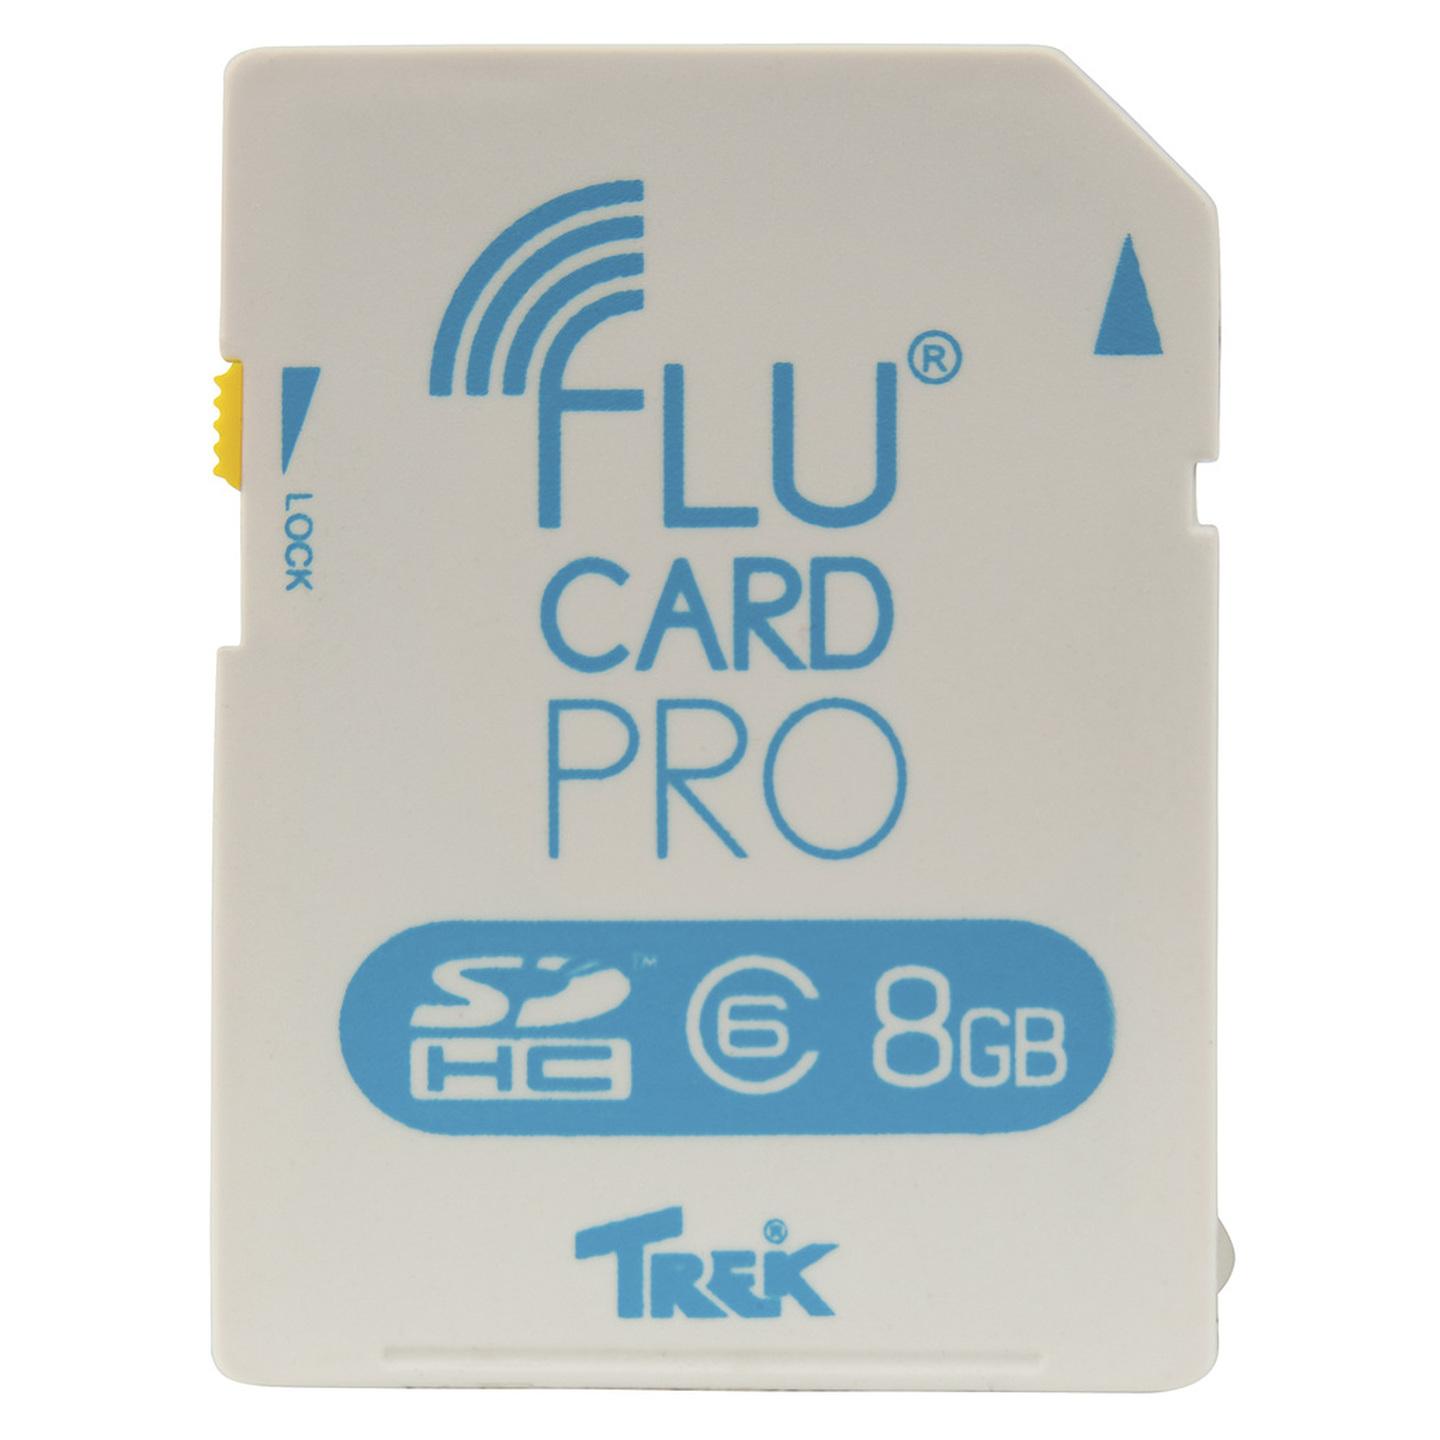 Flucard PRO Wireless SD Card - 8GB